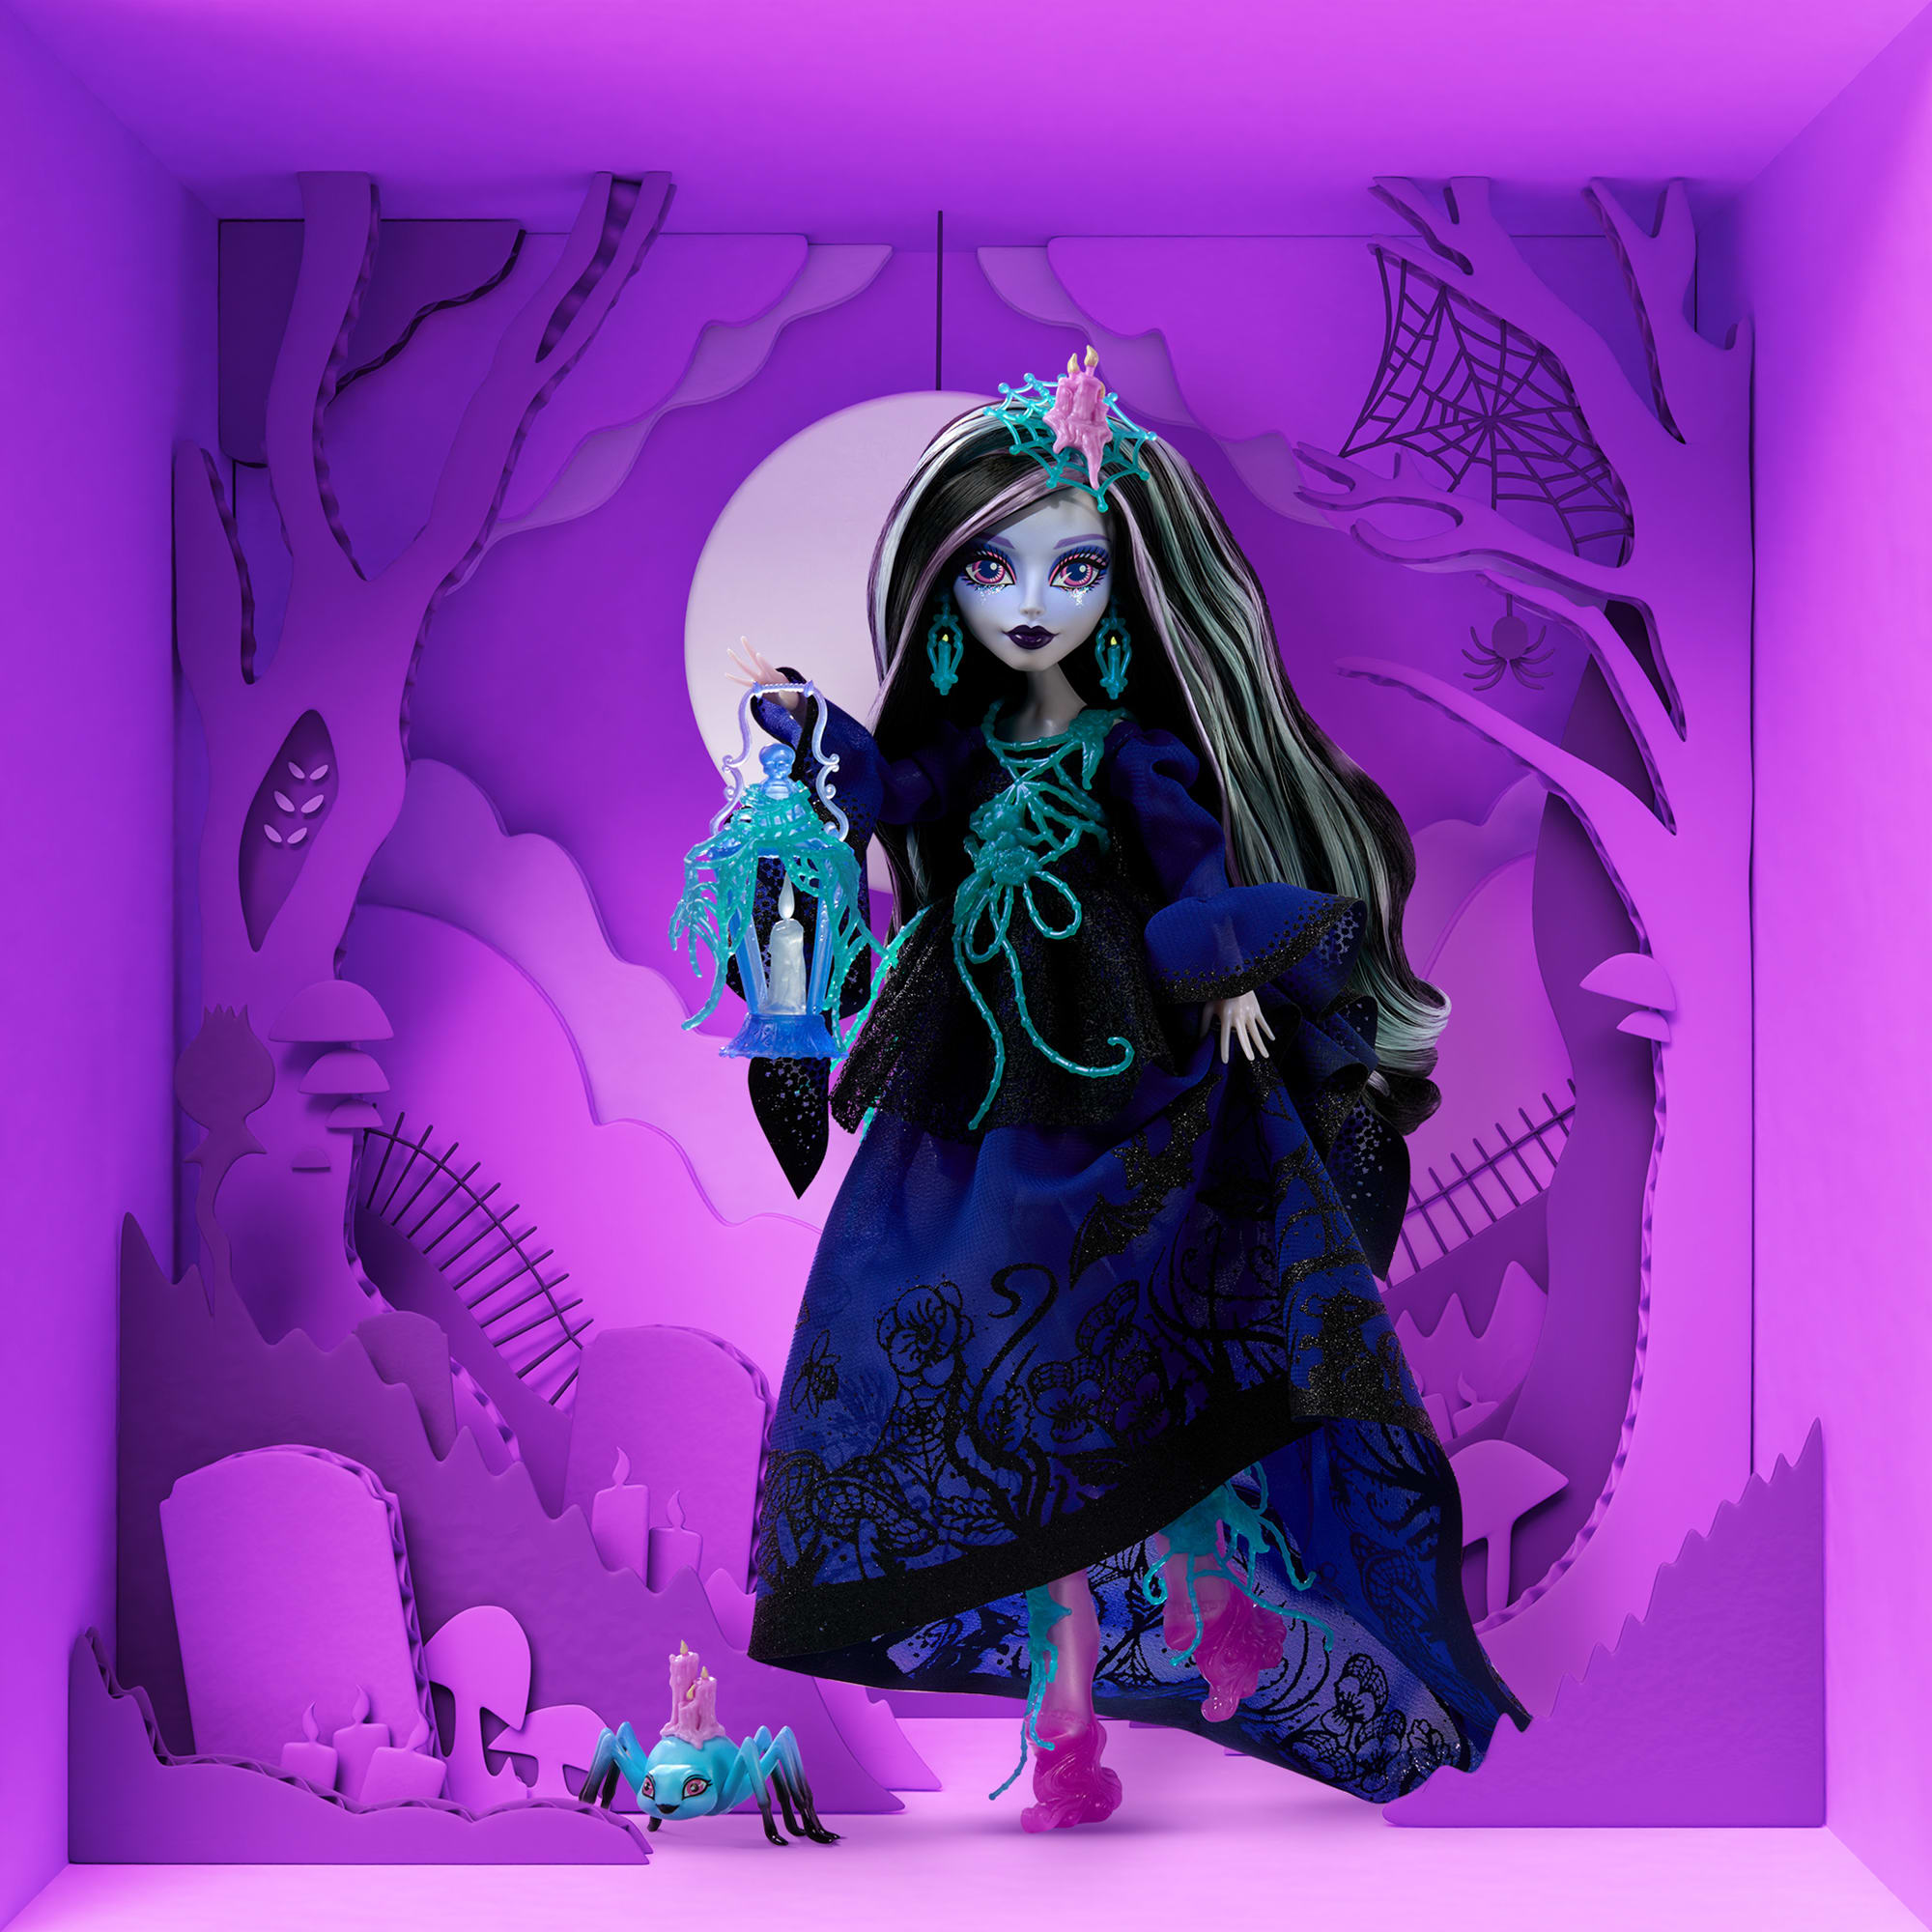 Monster High Lenore Loomington Doll